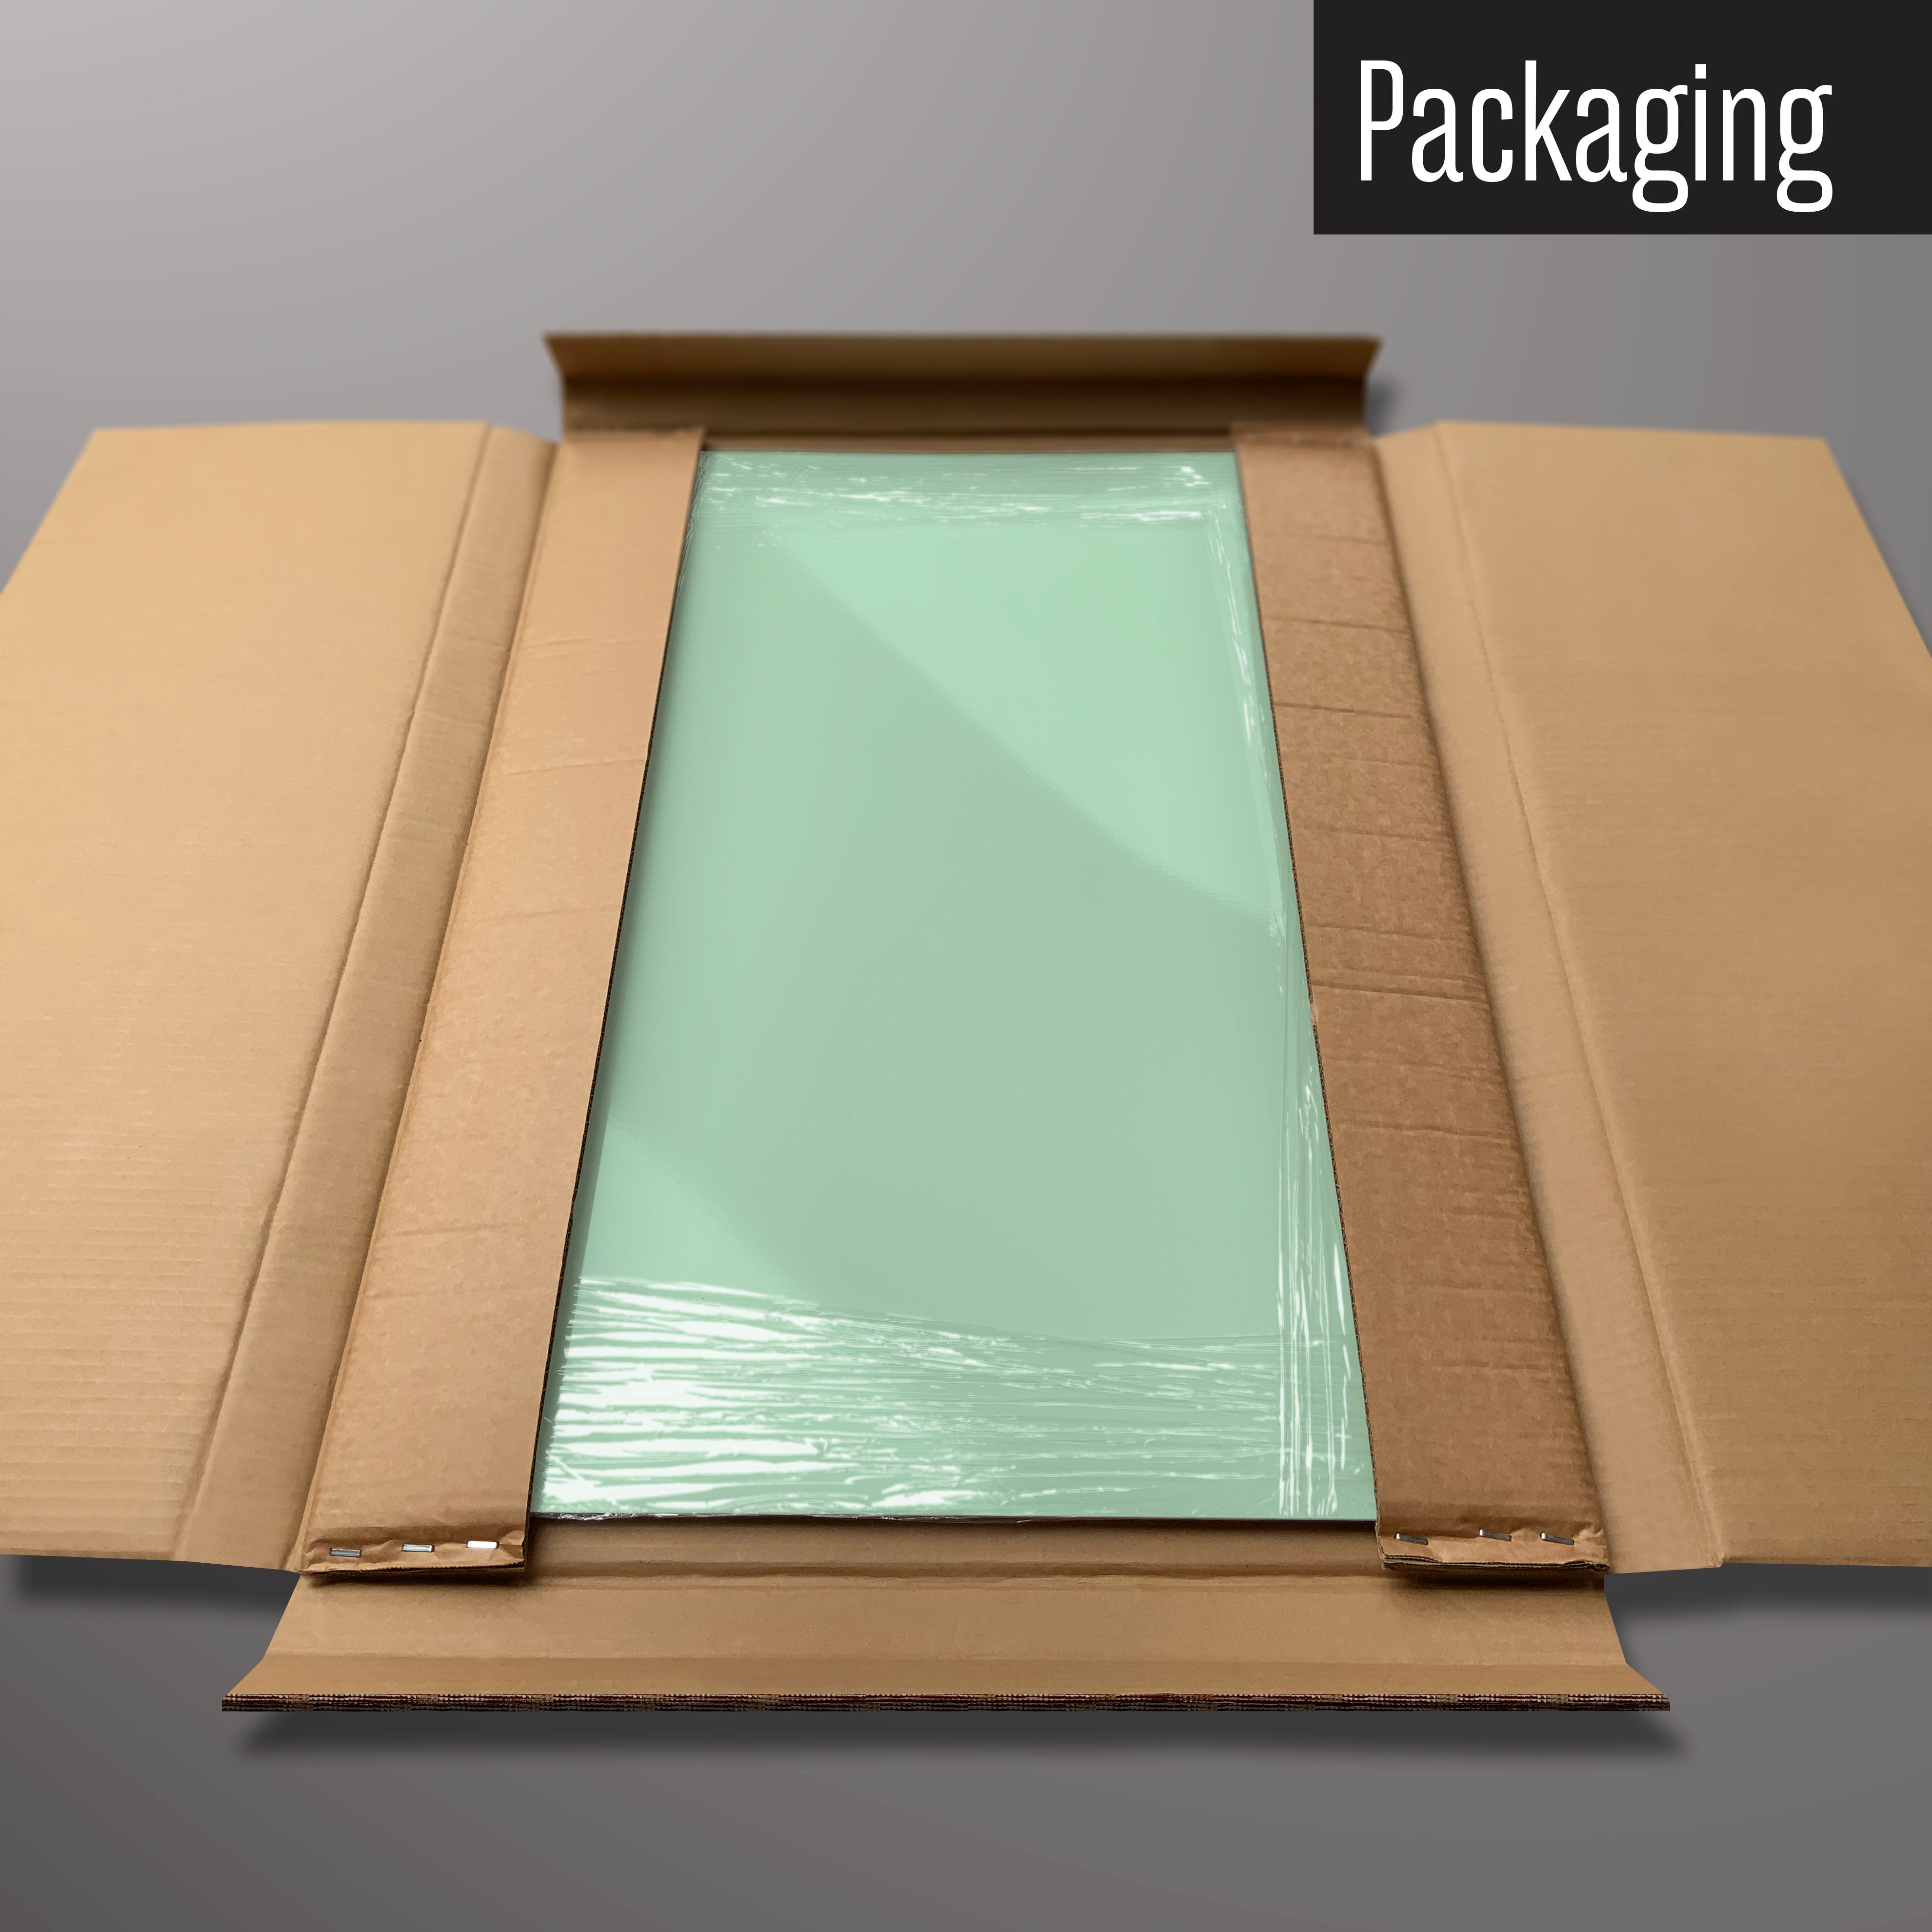 A plain green magnetic board in it’s cardboard packaging